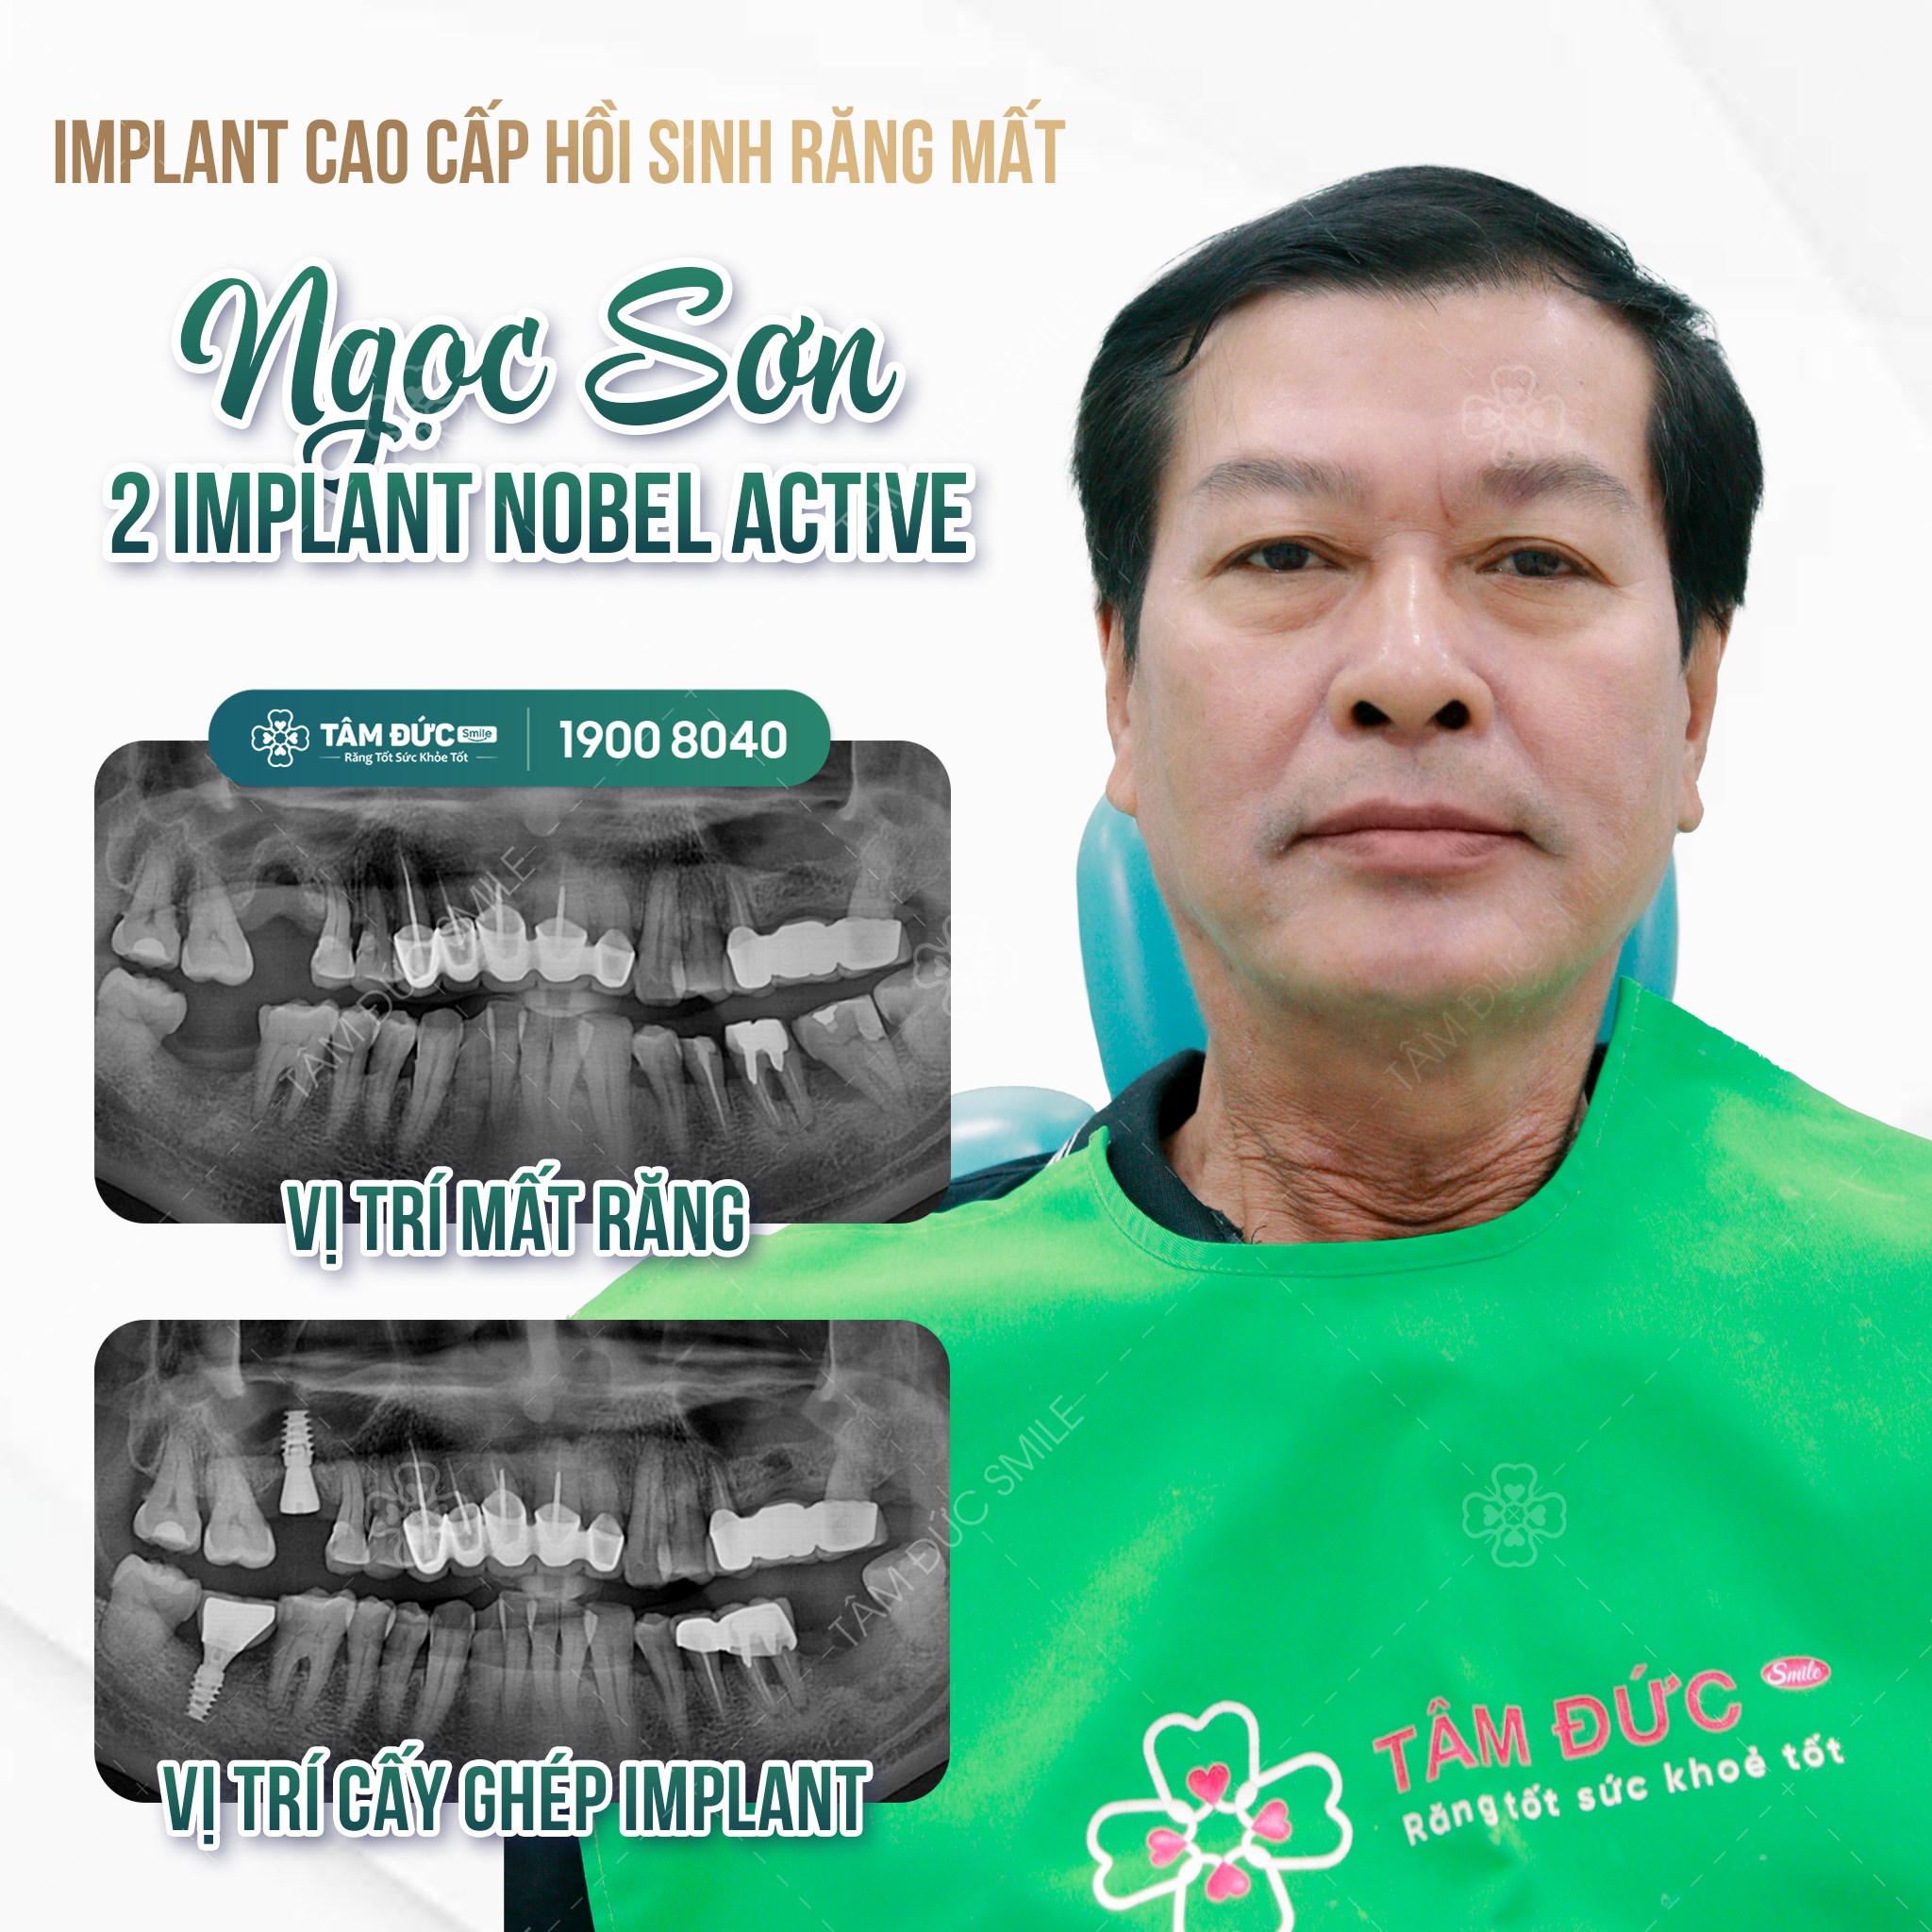 Viện Cấy Ghép Implant TÂM ĐỨC SMILE ảnh 1